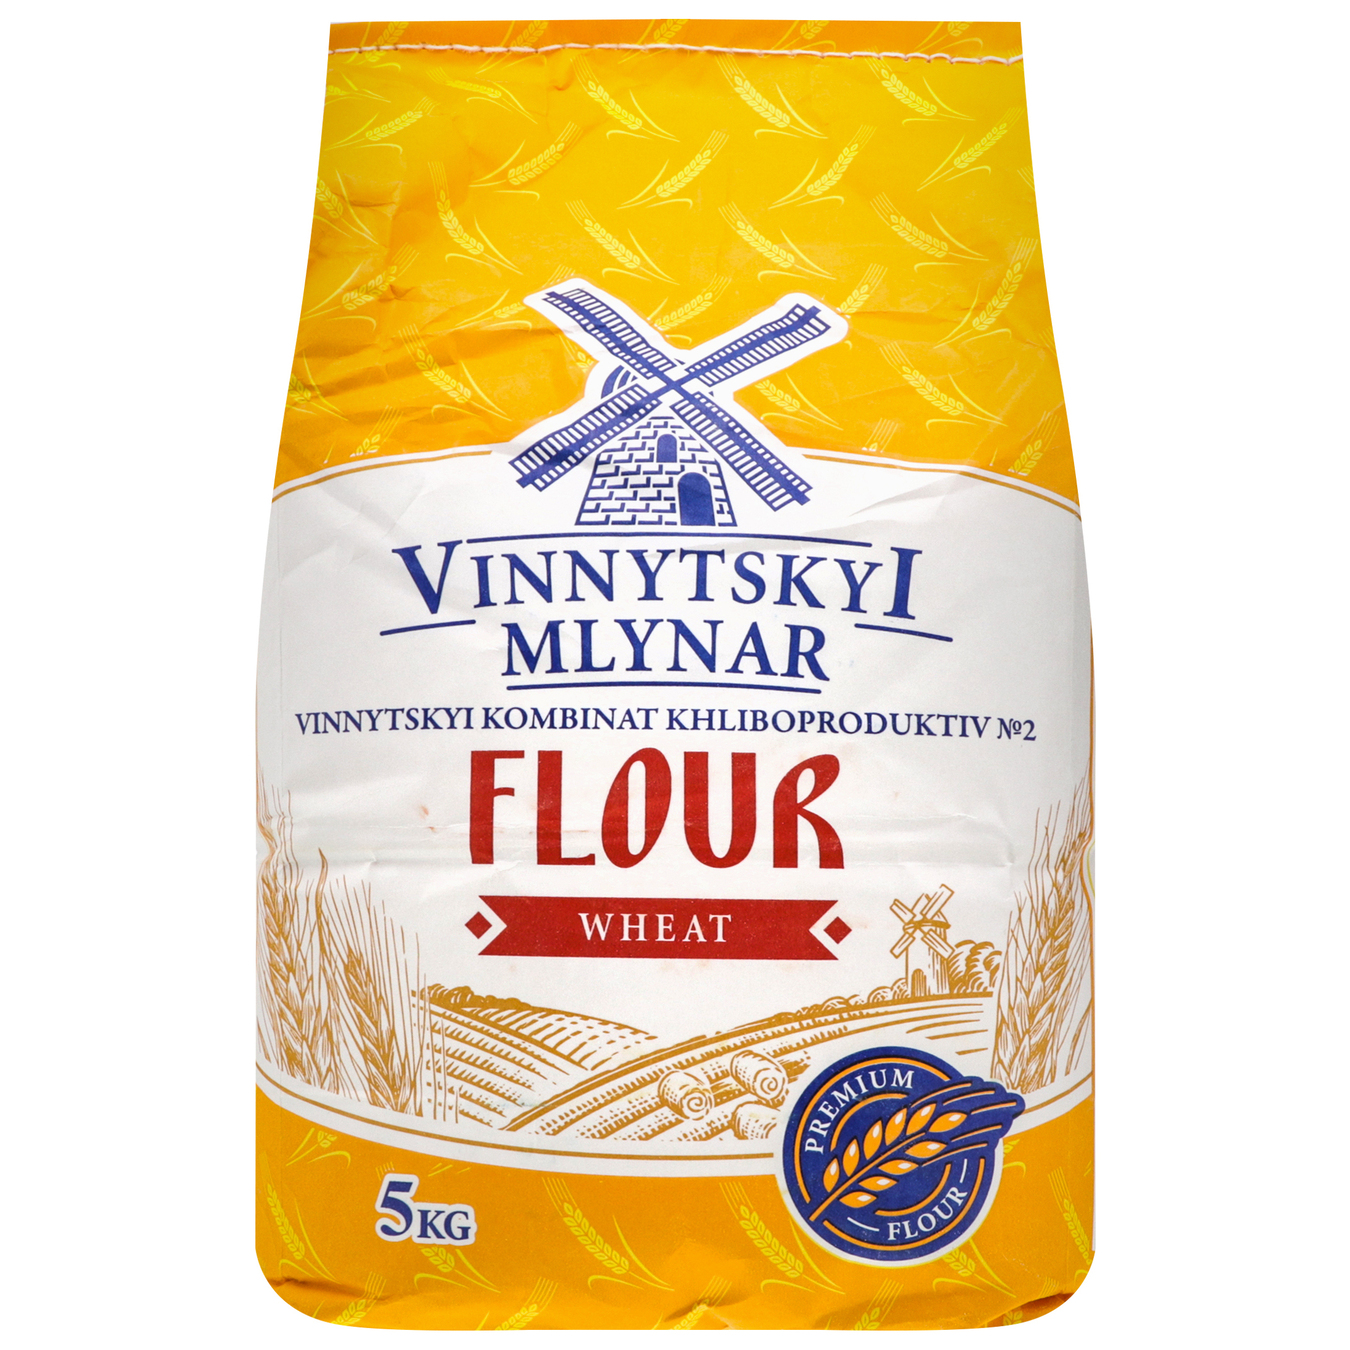 Vinnytskyi mlynar Flour 5kg 3